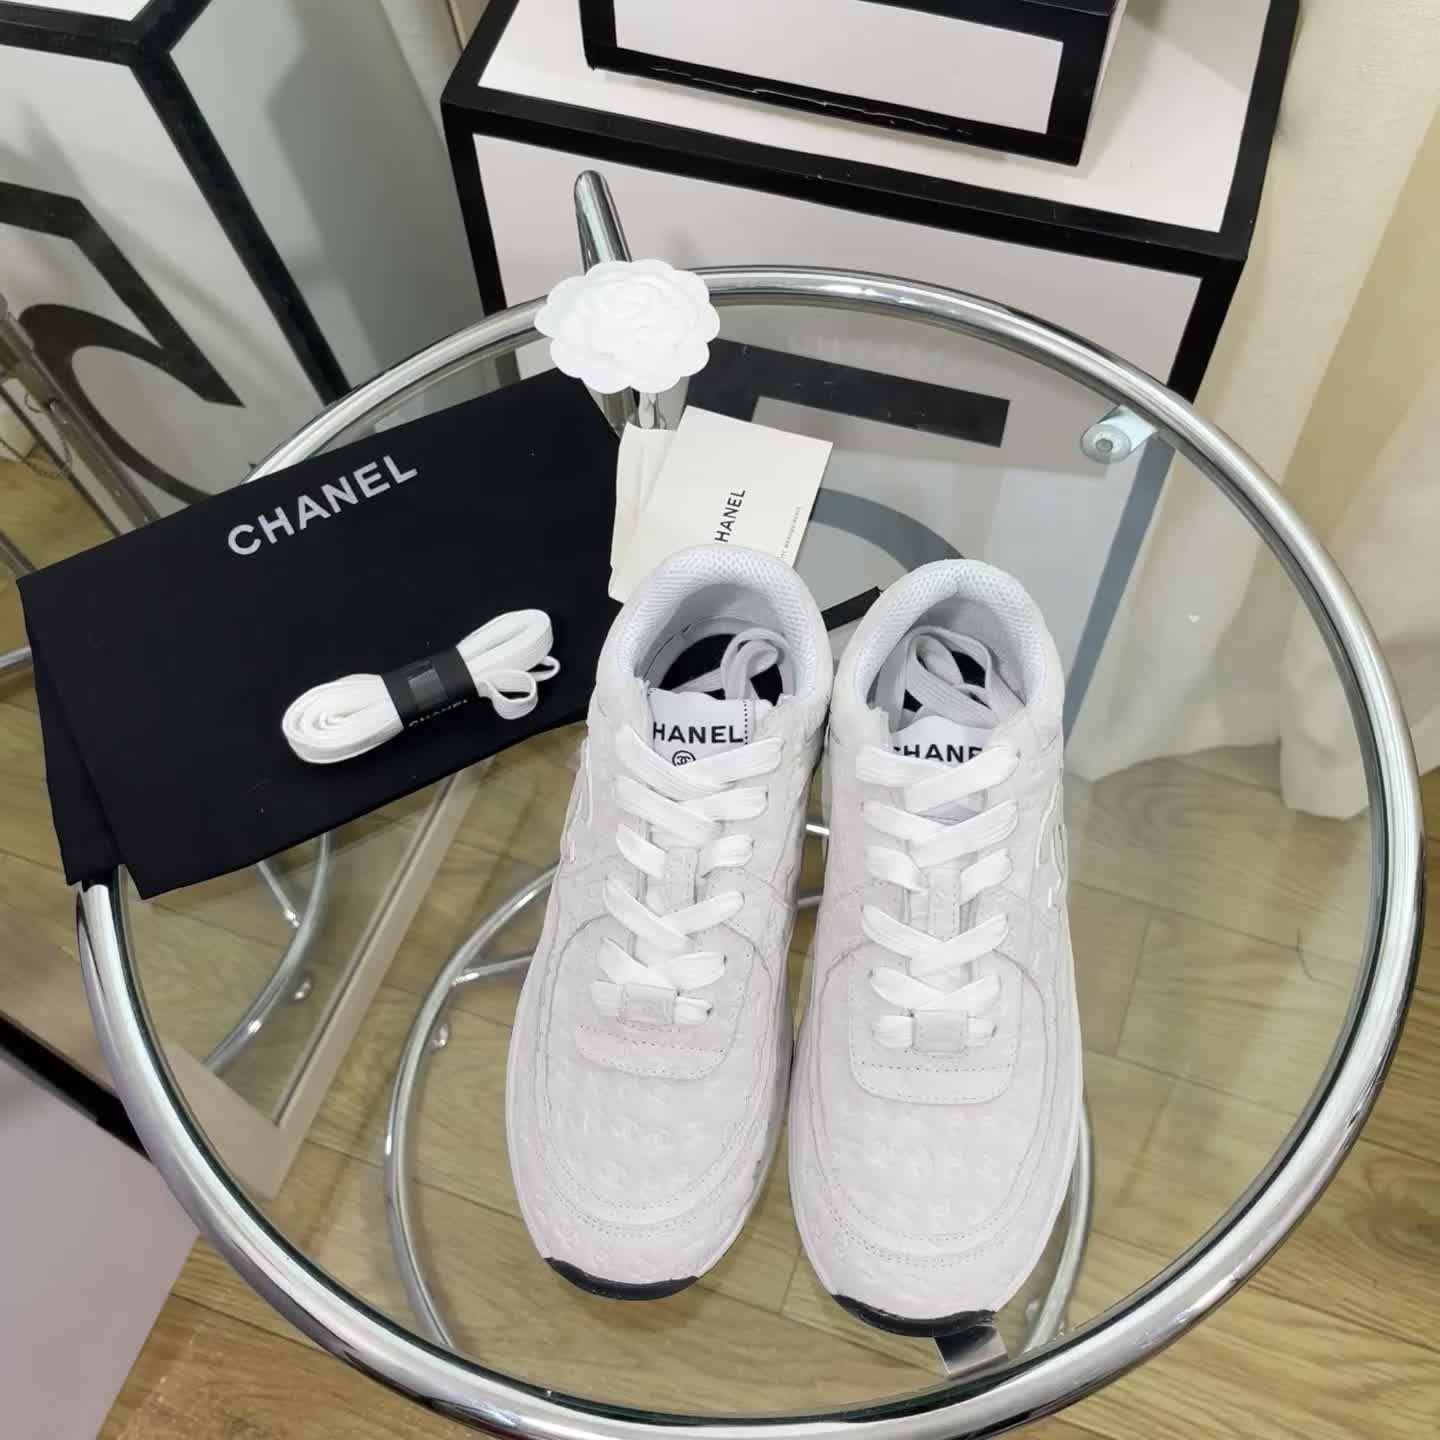 Chanel-Women Shoes Code: XS5123